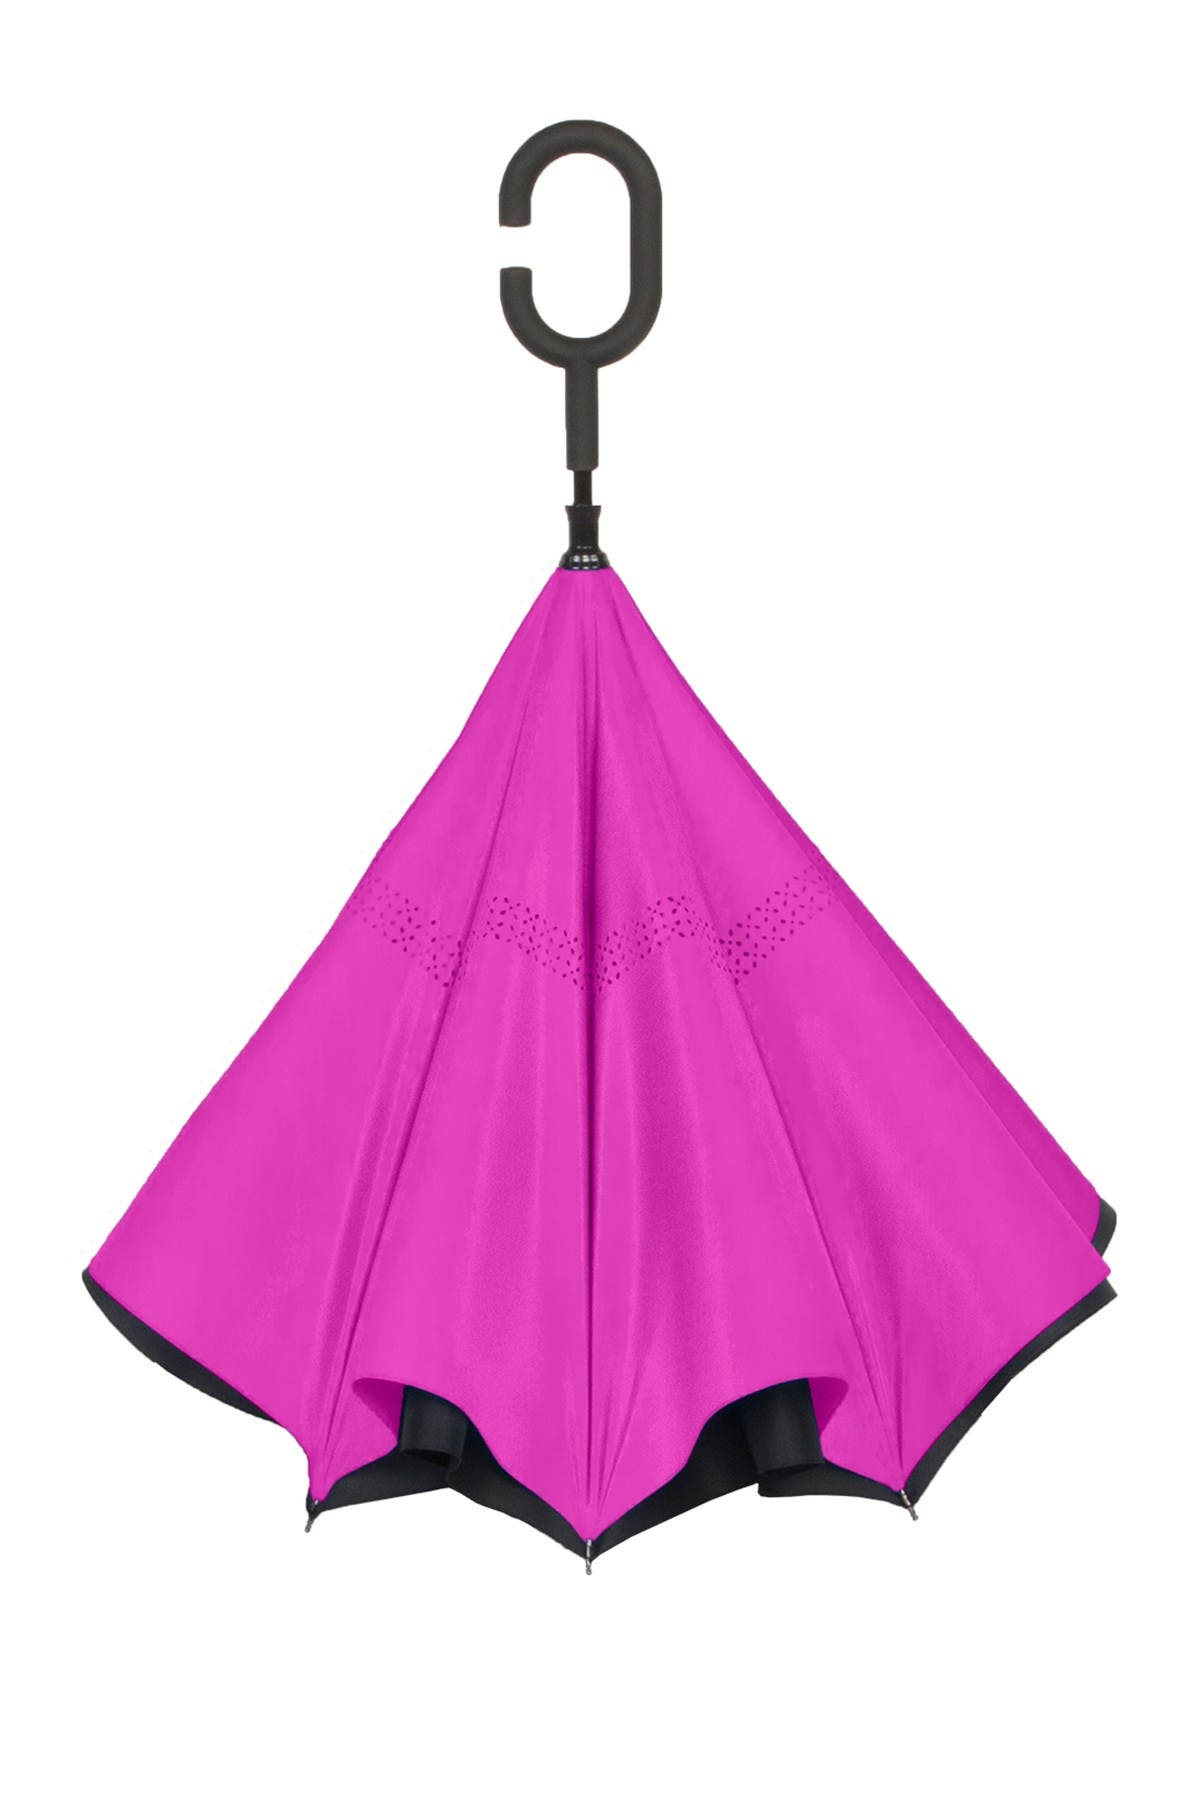 Shedrain Unbelievabrella Reversible Umbrella In Open Pink3